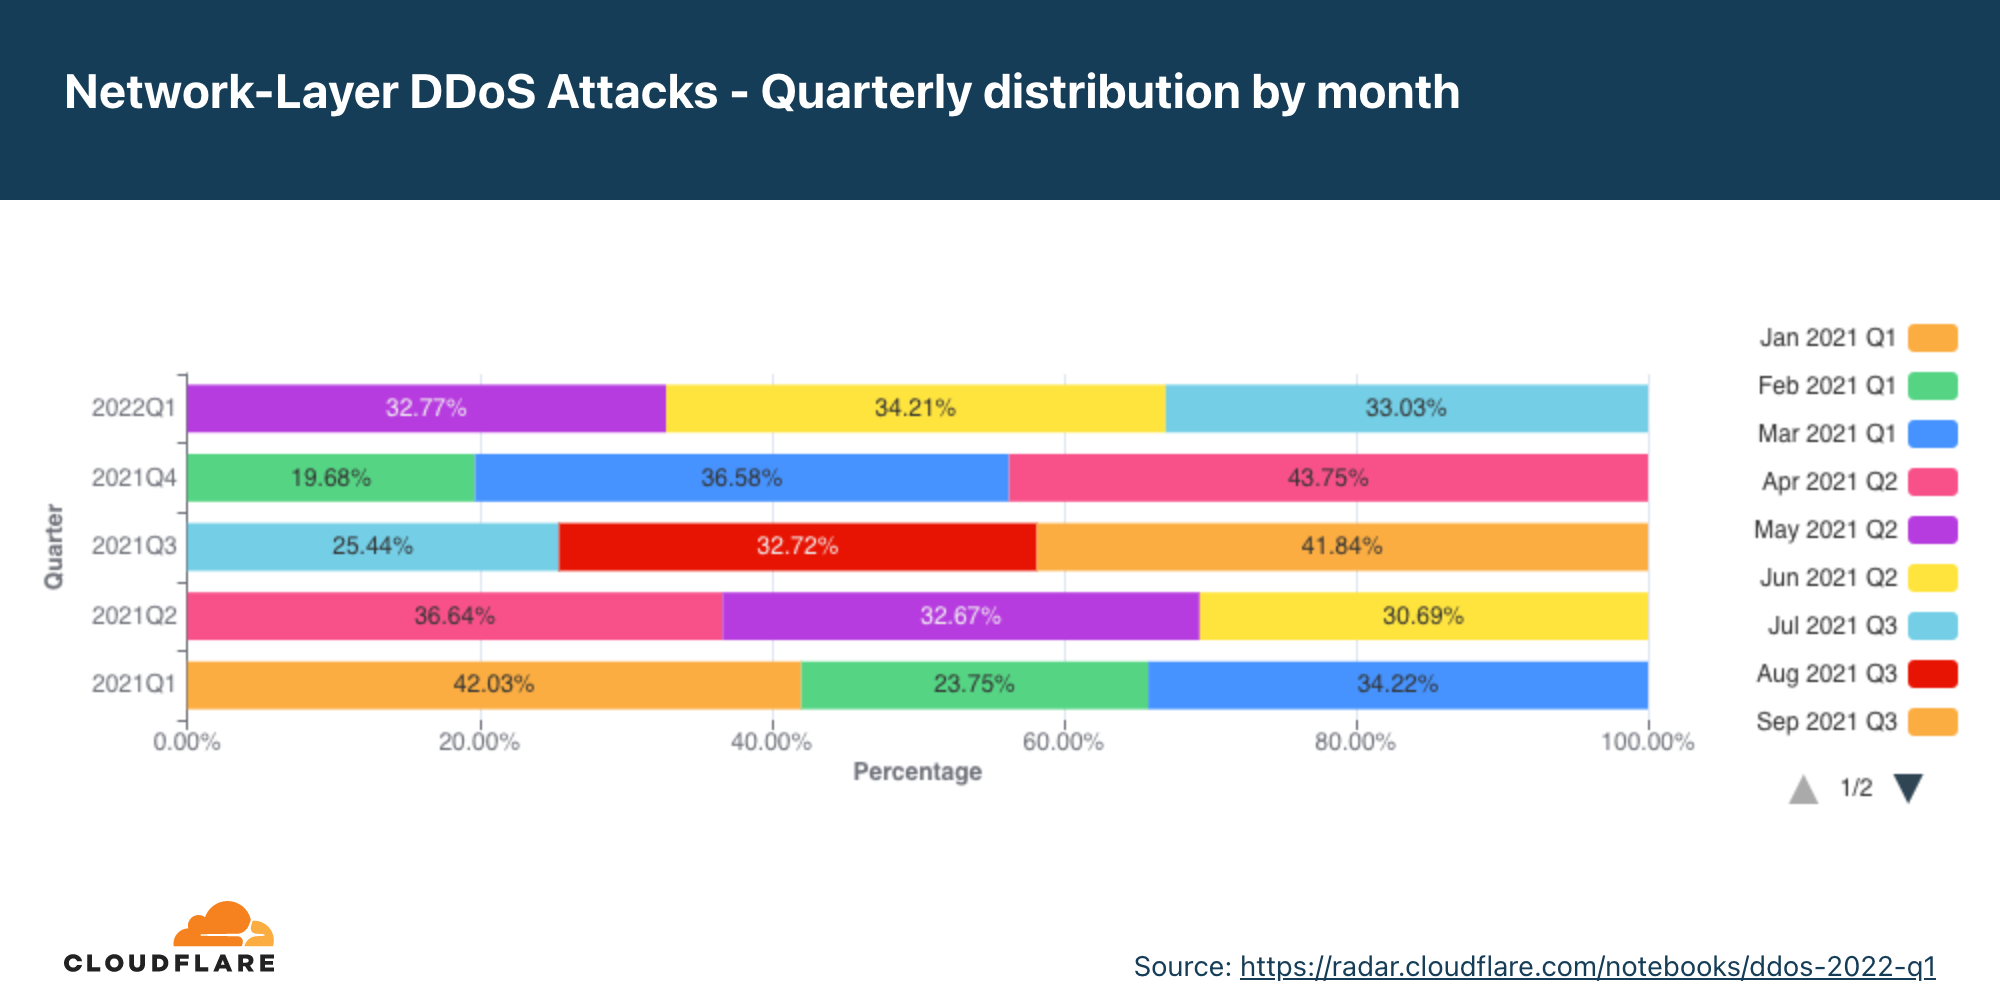 Gráfico da distribuição trimestral de ataques DDoS na camada de rede por mês nos últimos 12 meses